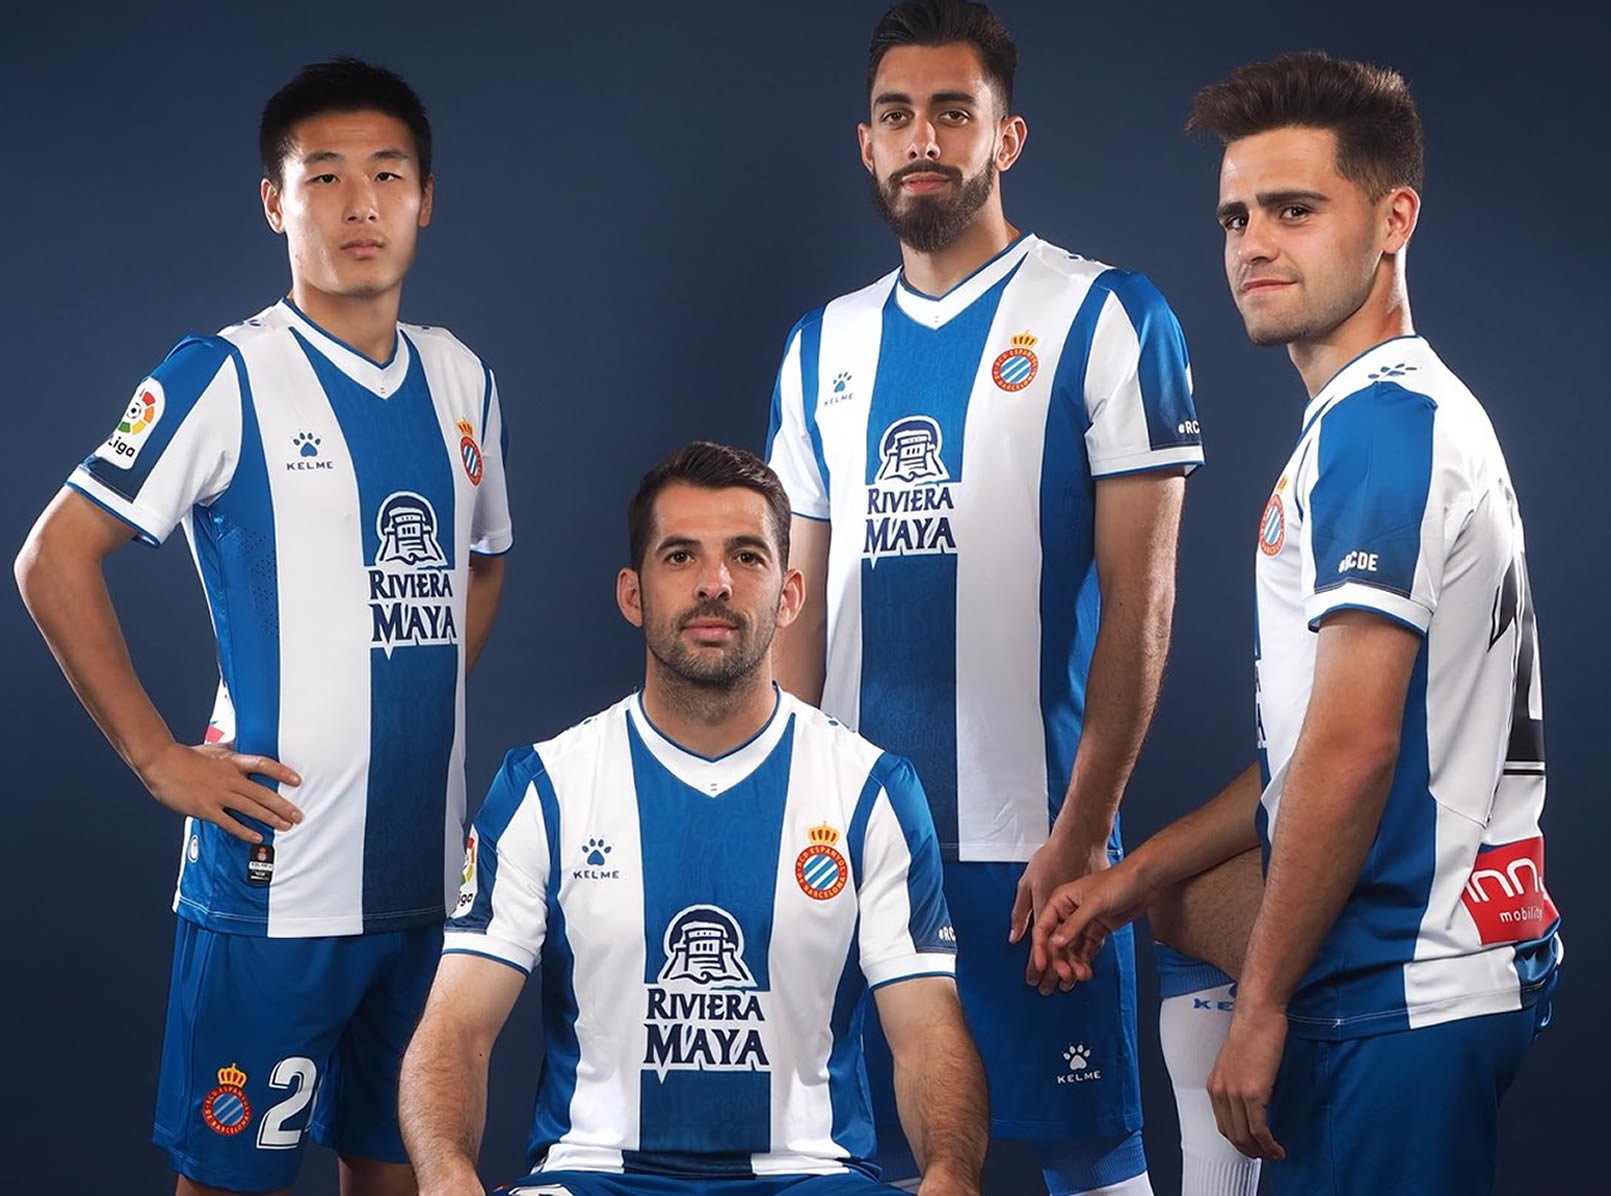 Camiseta titular Kelme del RCD Espanyol 2019/20 | Imagen Web Oficial